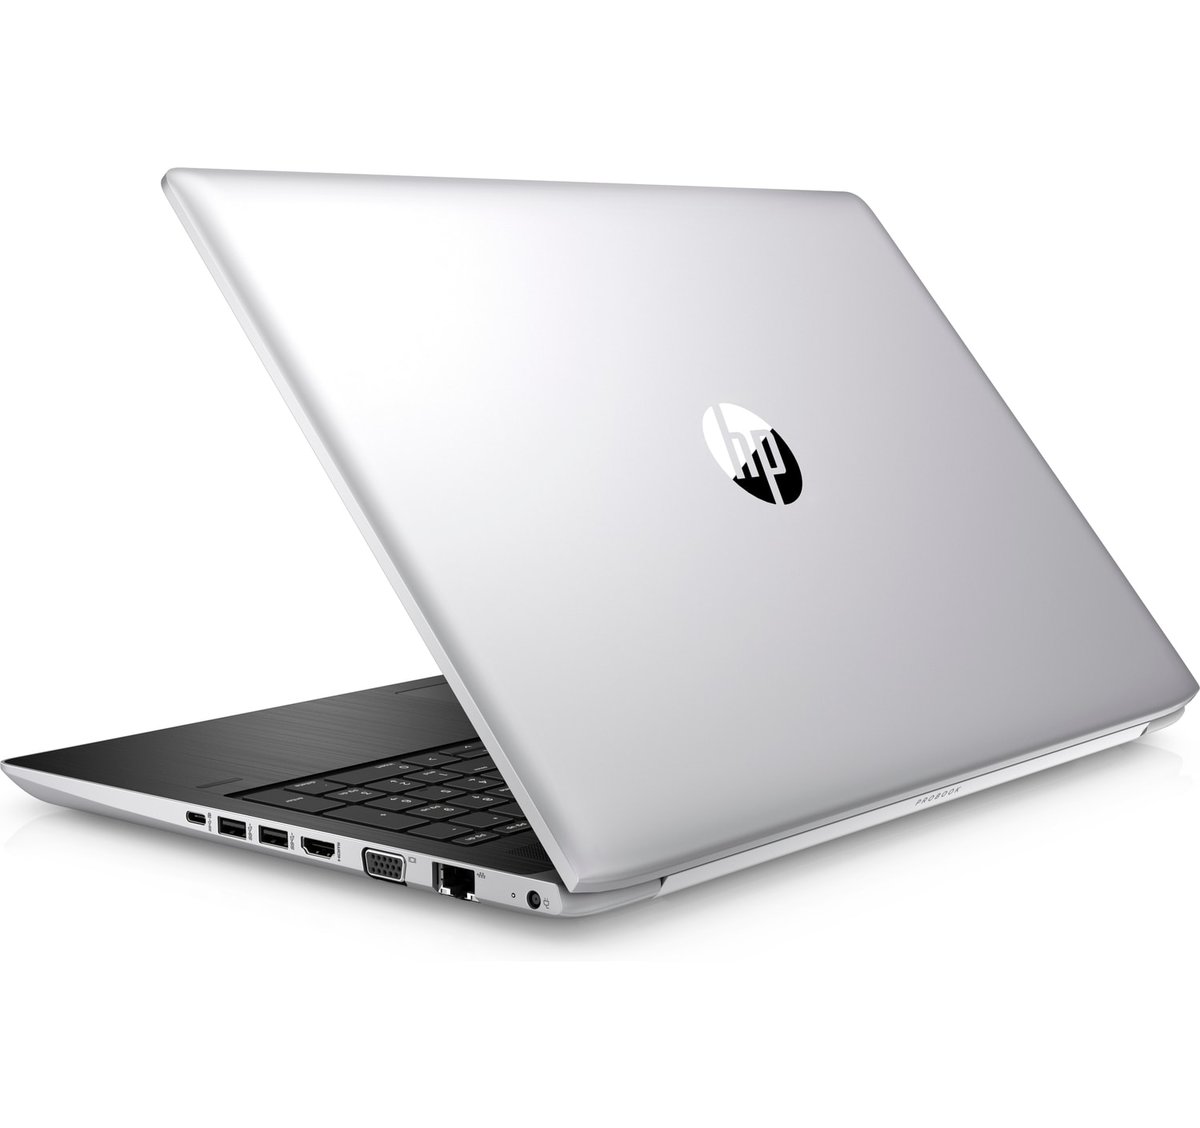 HP ProBook 450 G5